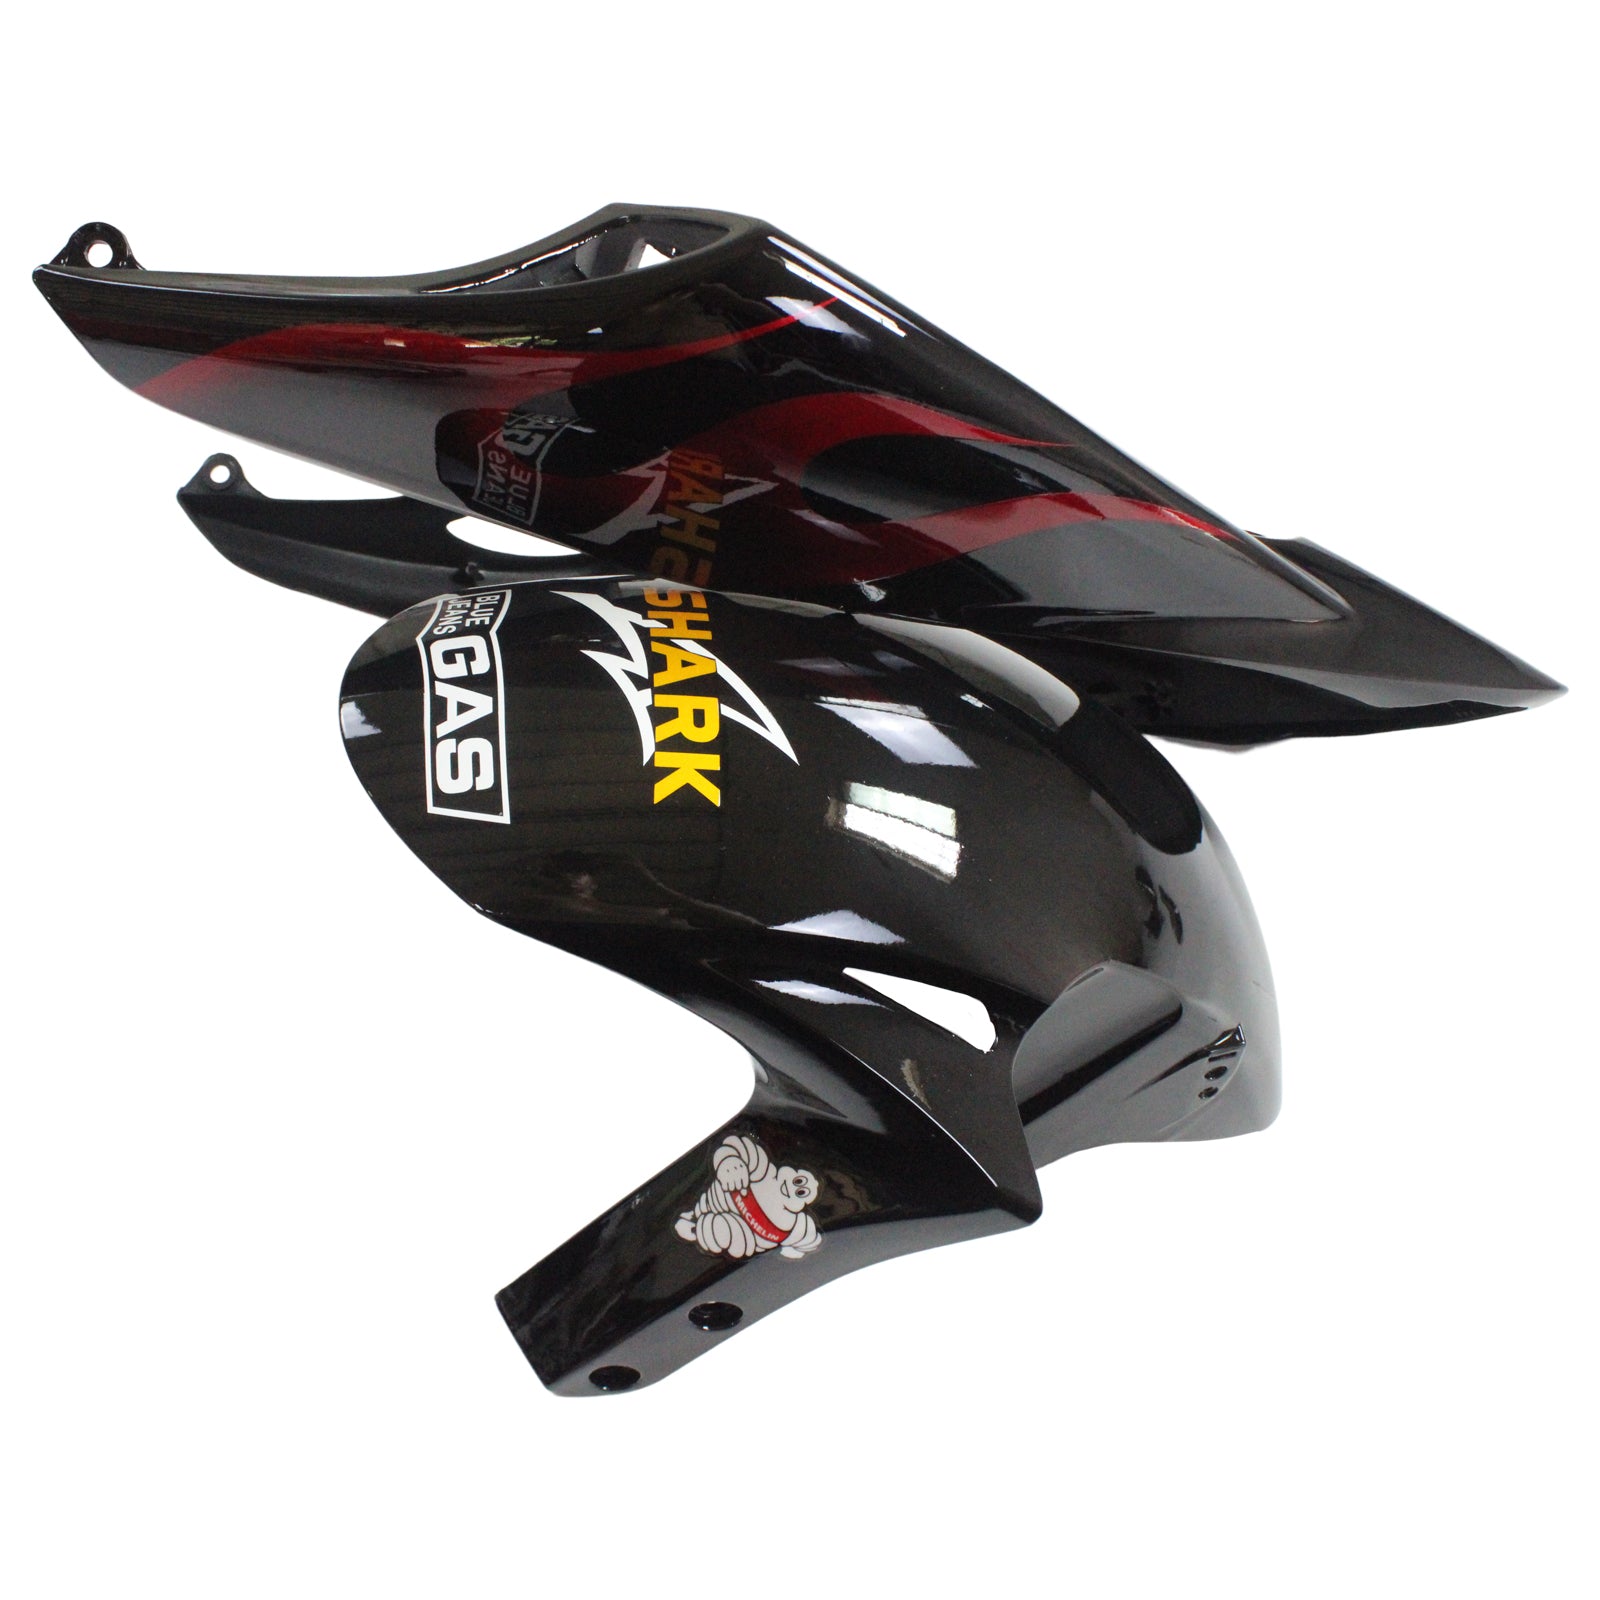 Amotopart Fairings Honda CBR1000RR 2006-2007 Fairing Flame Shark Racing Black & Red Fairing Kit